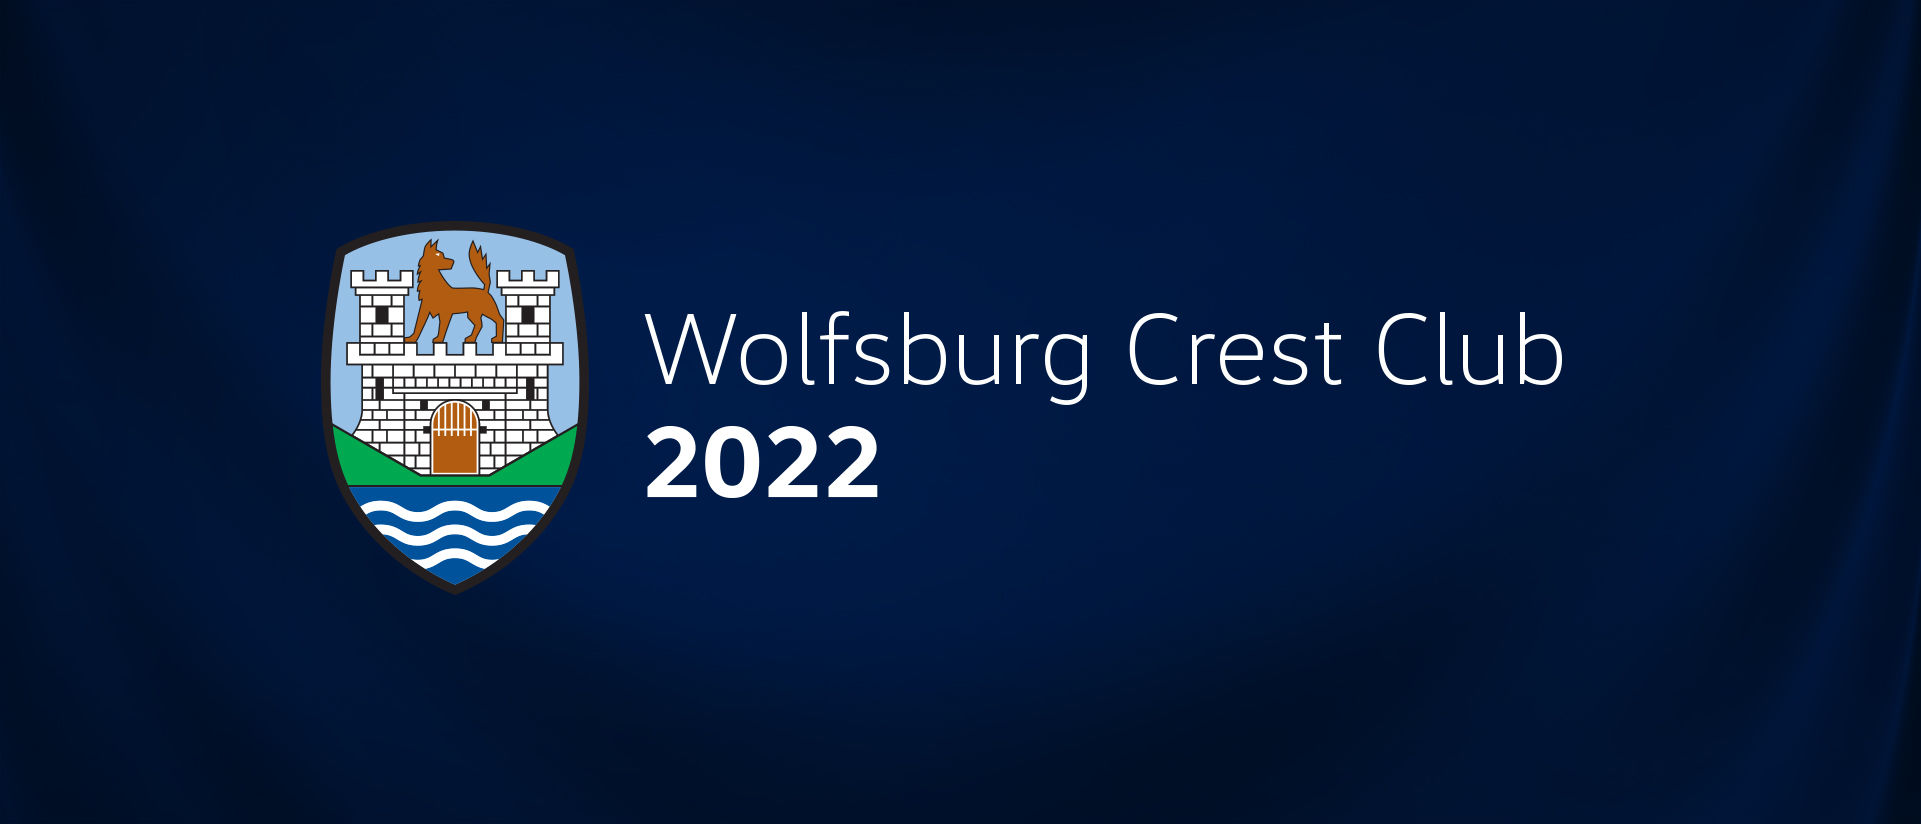 Wolfsburg Crest Club 2022